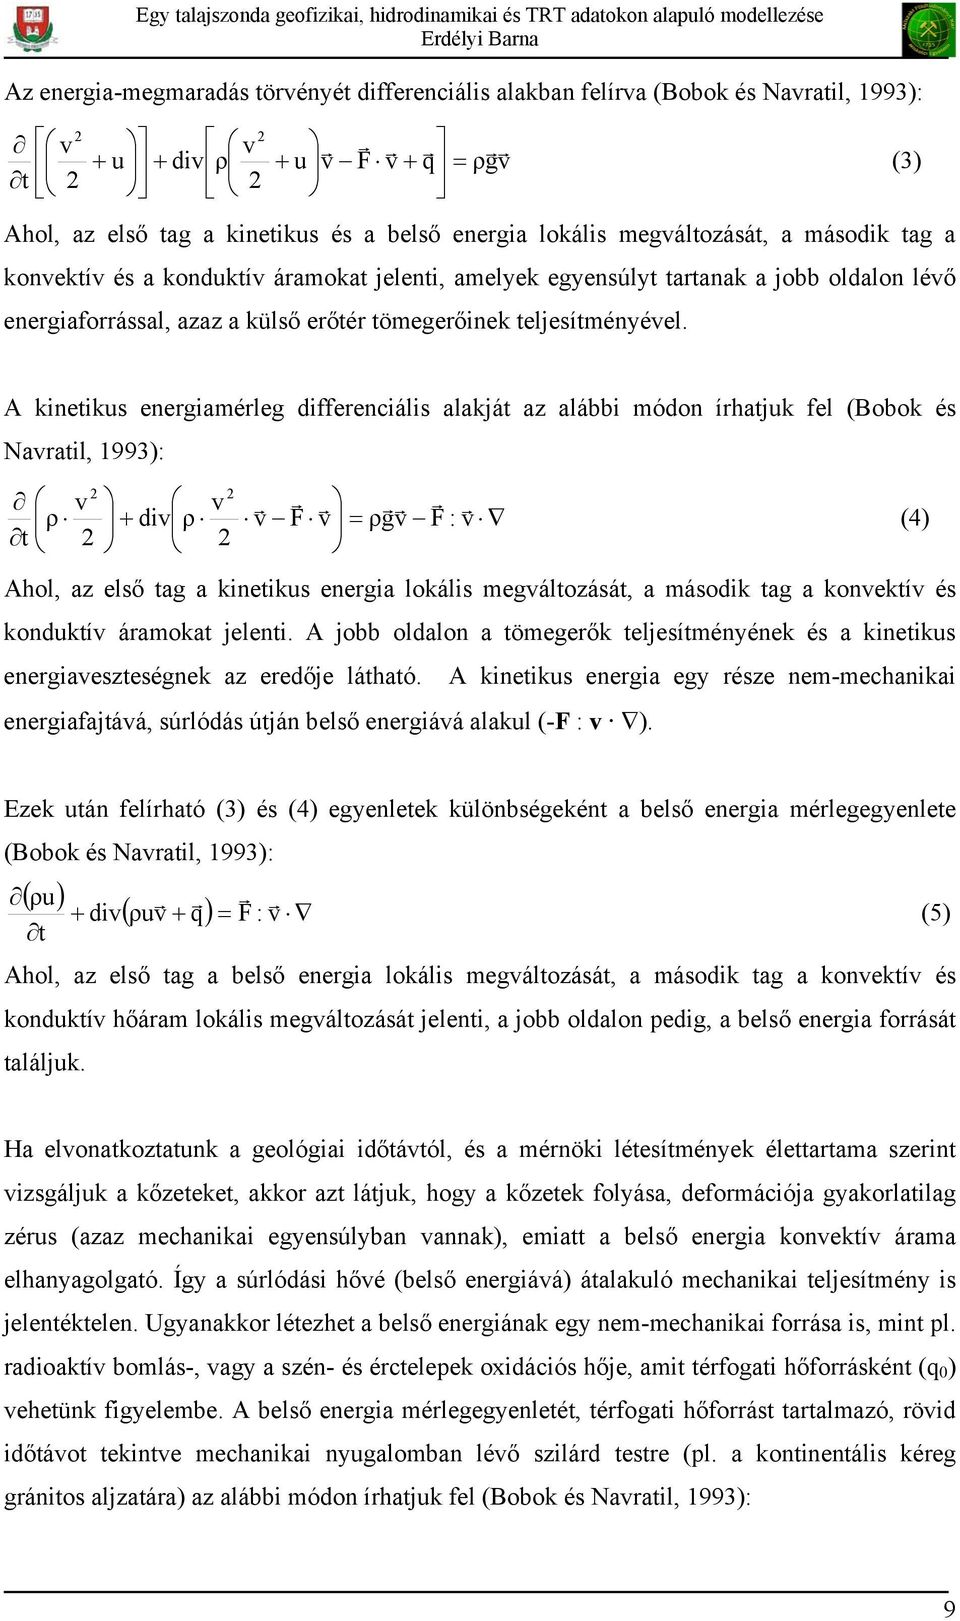 A kinetikus energiamérleg differenciális alakját az alábbi módon írhatjuk fel (Bobok és Navratil, 1993): 2 v ρ t 2 2 v + div ρ 2 r r r rr r r v F v = ρgv F : v (4) Ahol, az első tag a kinetikus